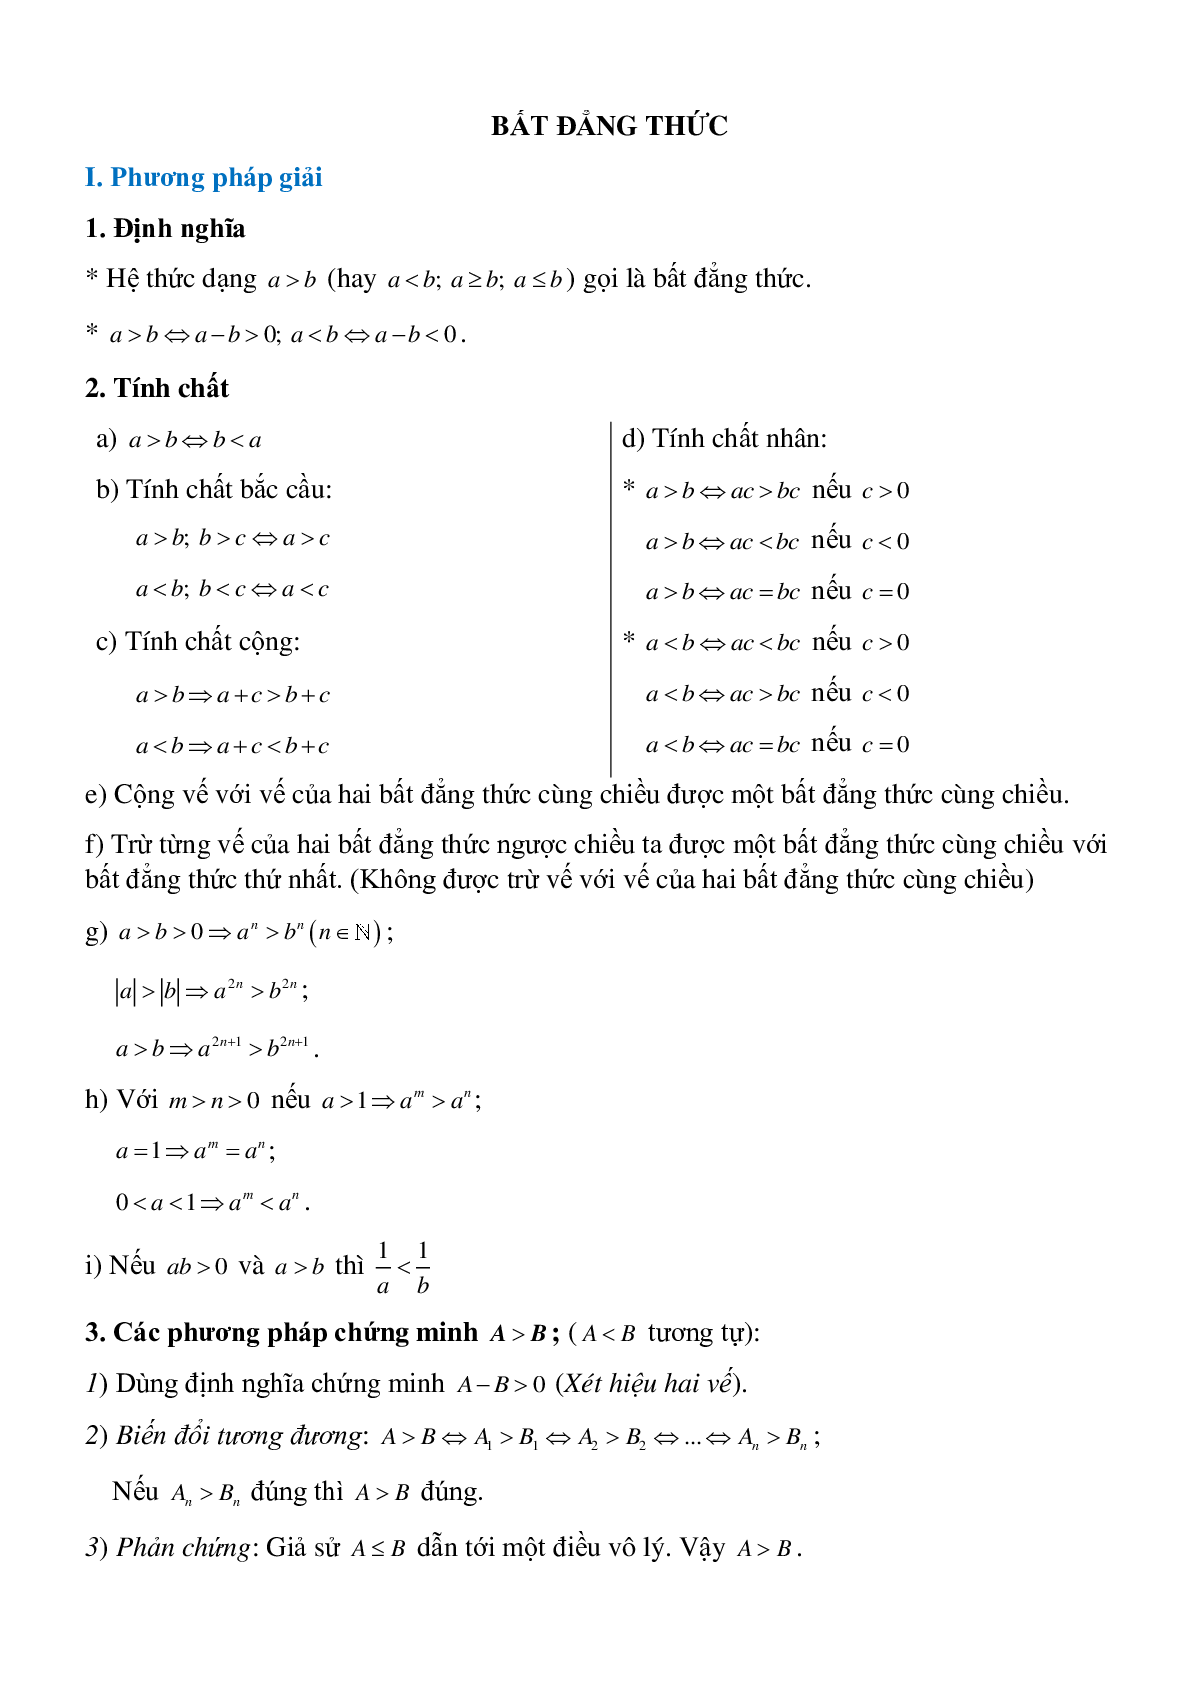 Bất đẳng thức - Đại số toán 8 (trang 1)